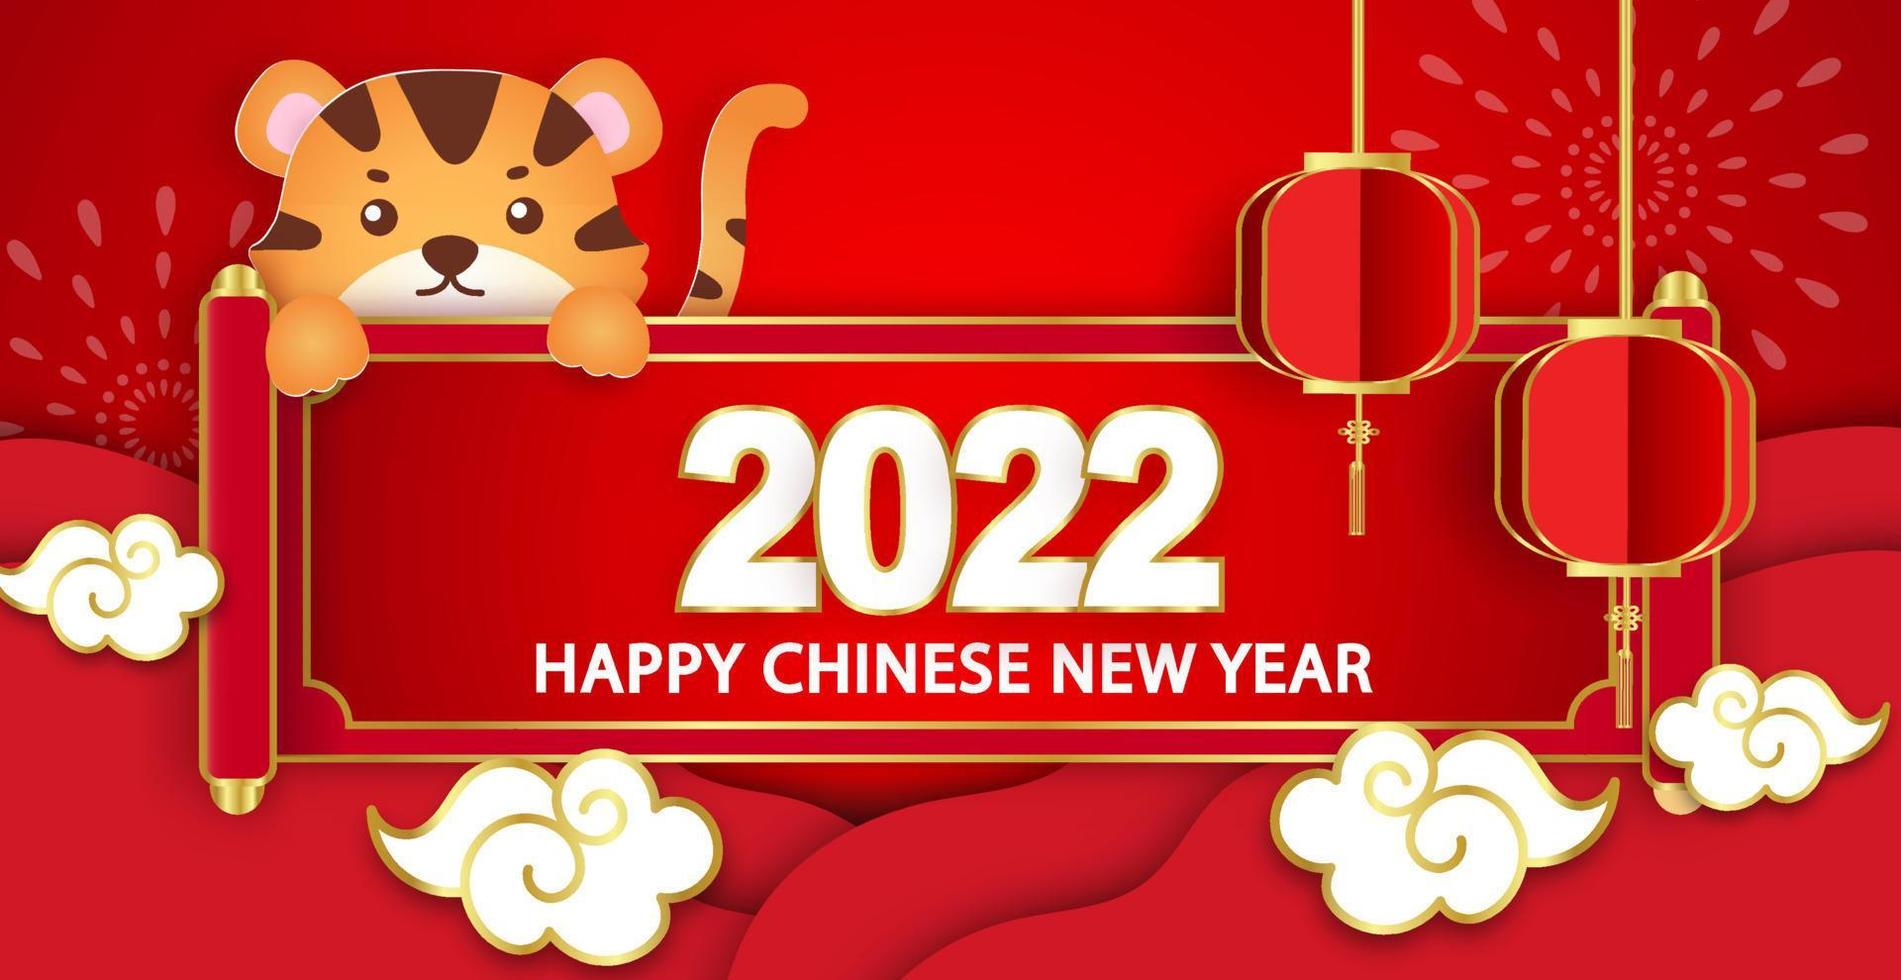 ano novo chinês 2022 banner do ano do tigre em estilo de corte de papel vetor